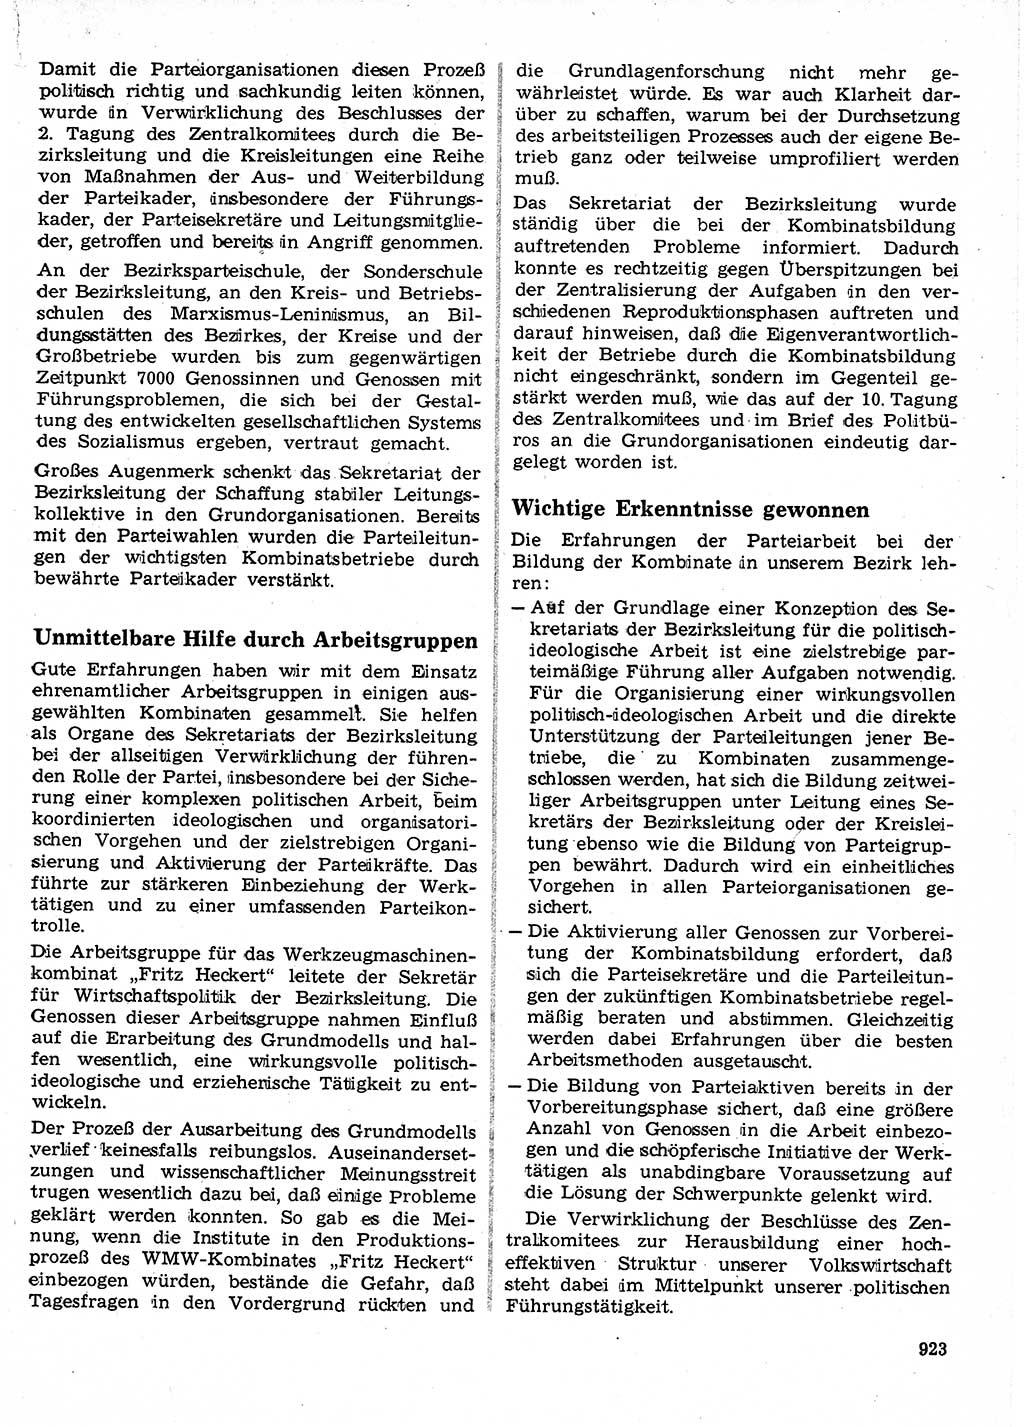 Neuer Weg (NW), Organ des Zentralkomitees (ZK) der SED (Sozialistische Einheitspartei Deutschlands) für Fragen des Parteilebens, 24. Jahrgang [Deutsche Demokratische Republik (DDR)] 1969, Seite 923 (NW ZK SED DDR 1969, S. 923)